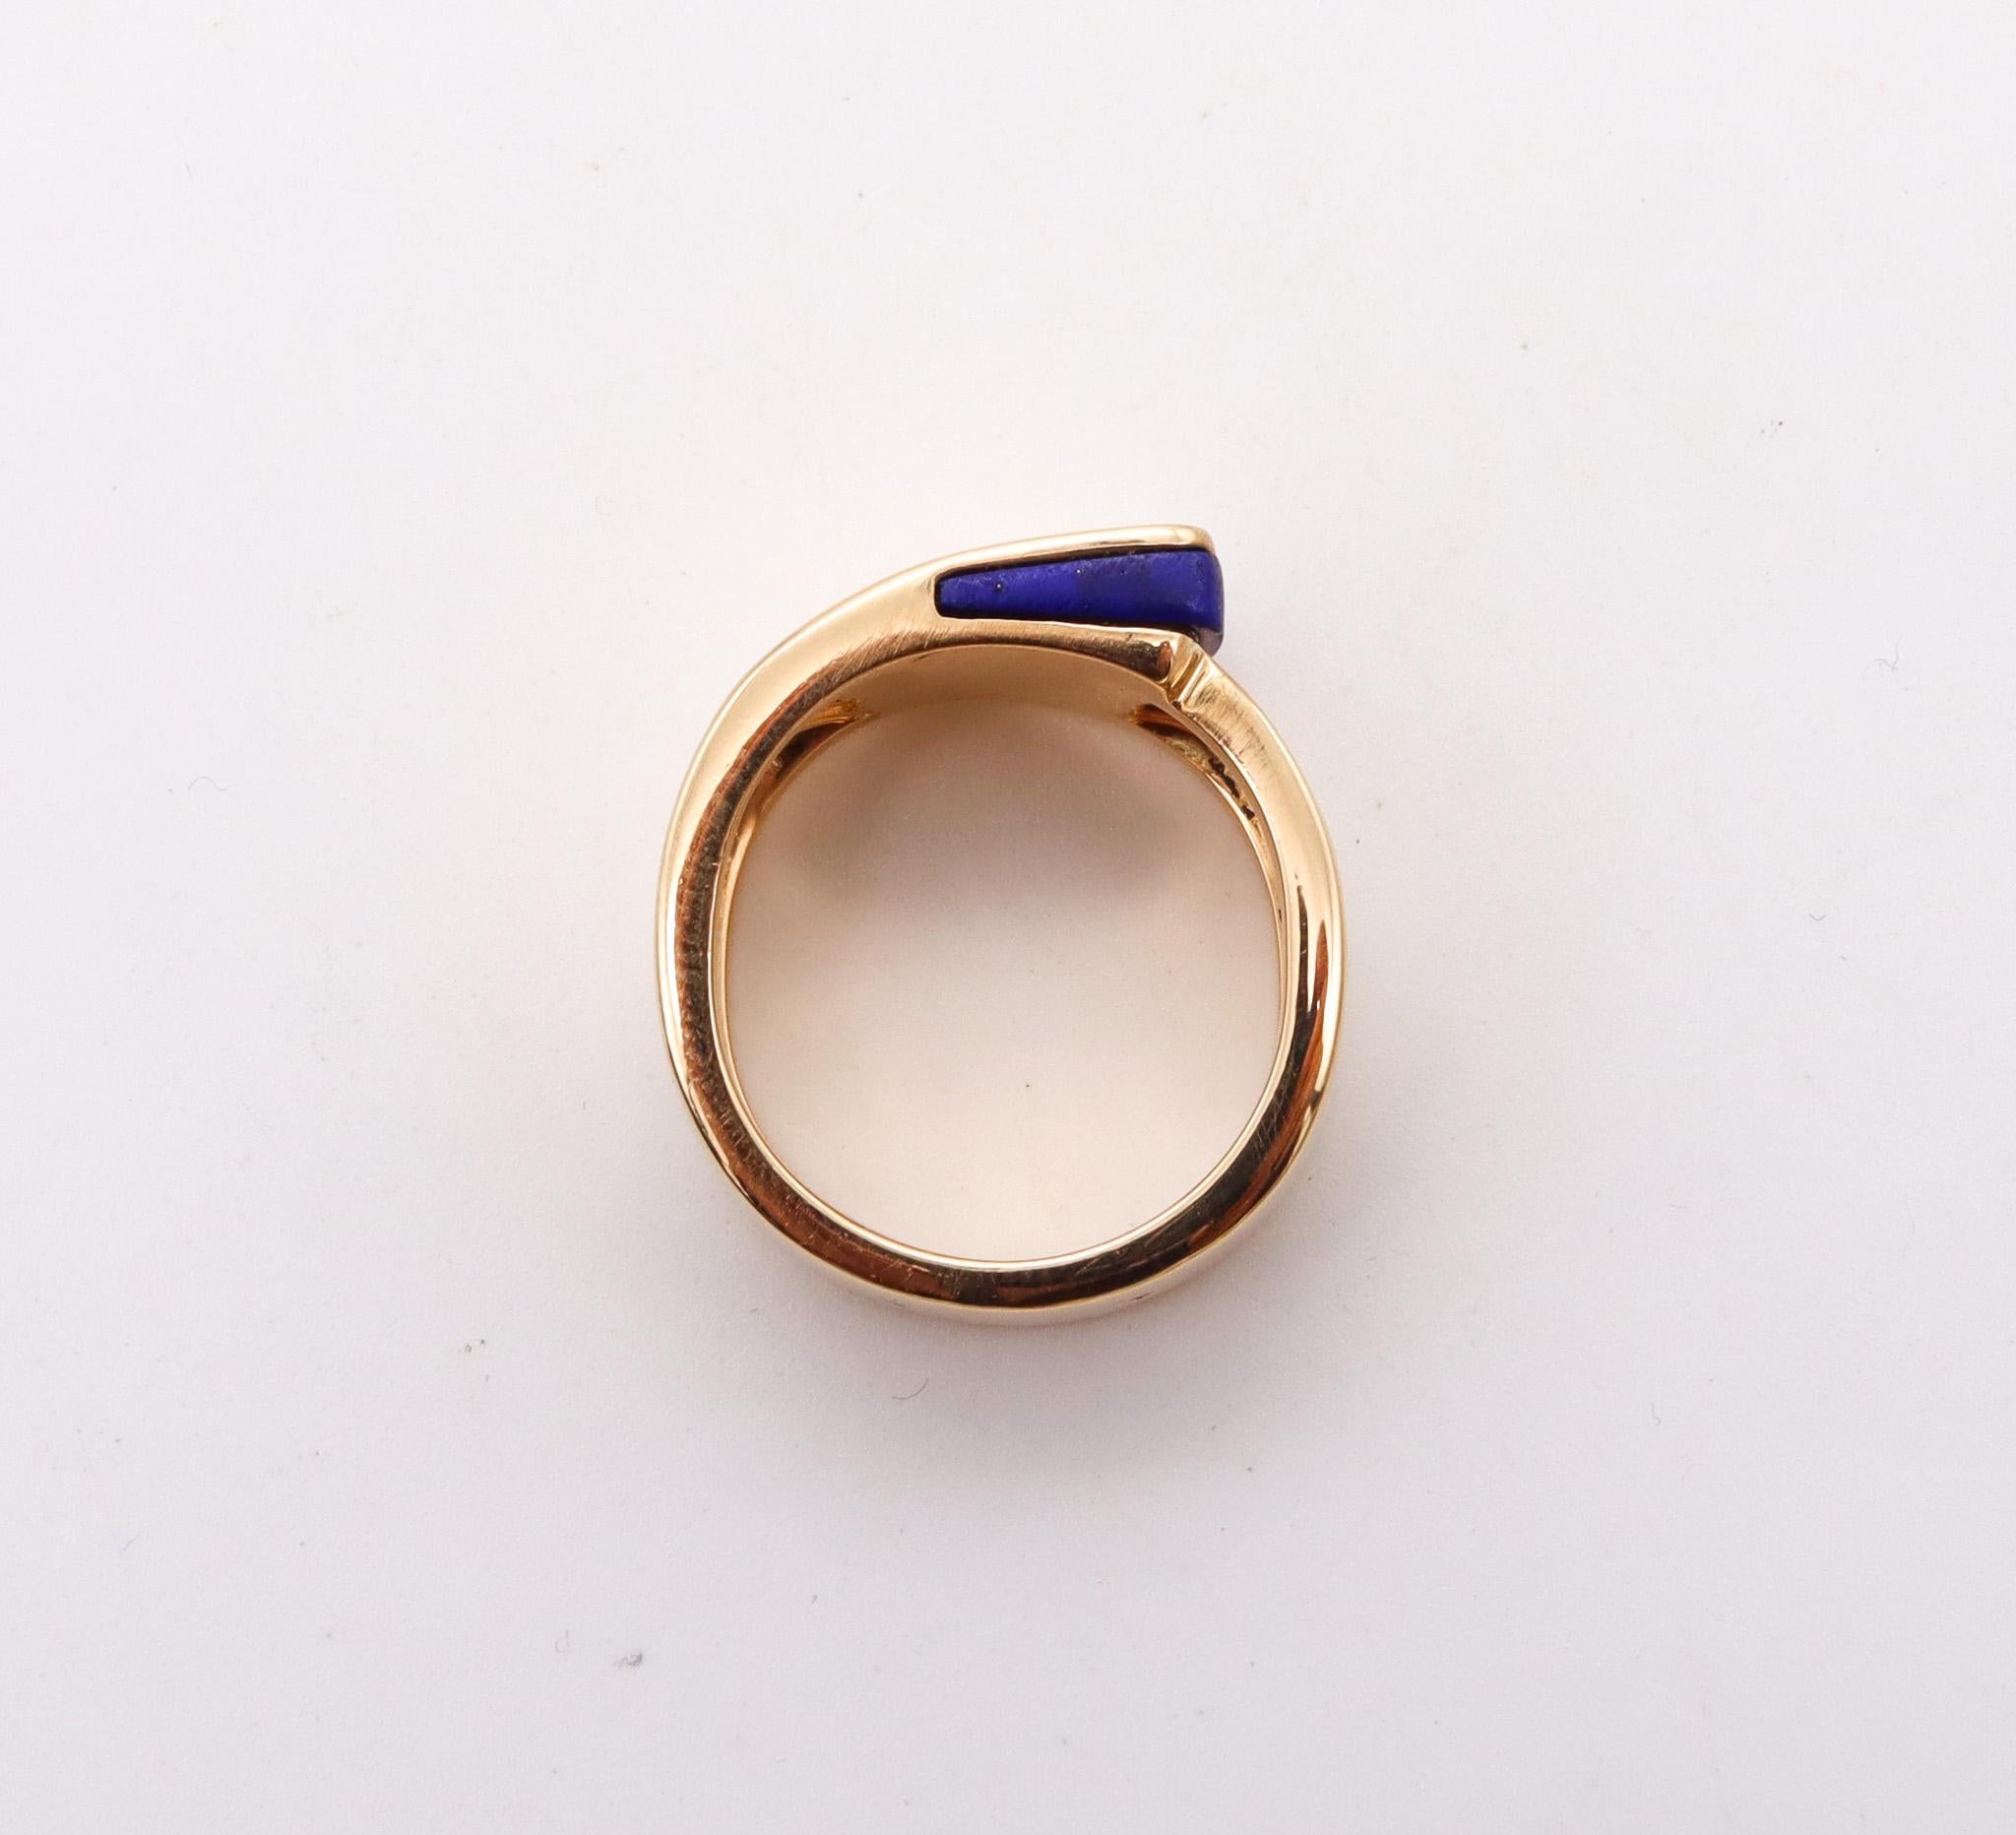 Women's or Men's Hermes Paris Candy H Ring in 18 Karat Yellow Gold with Lapis Lazuli